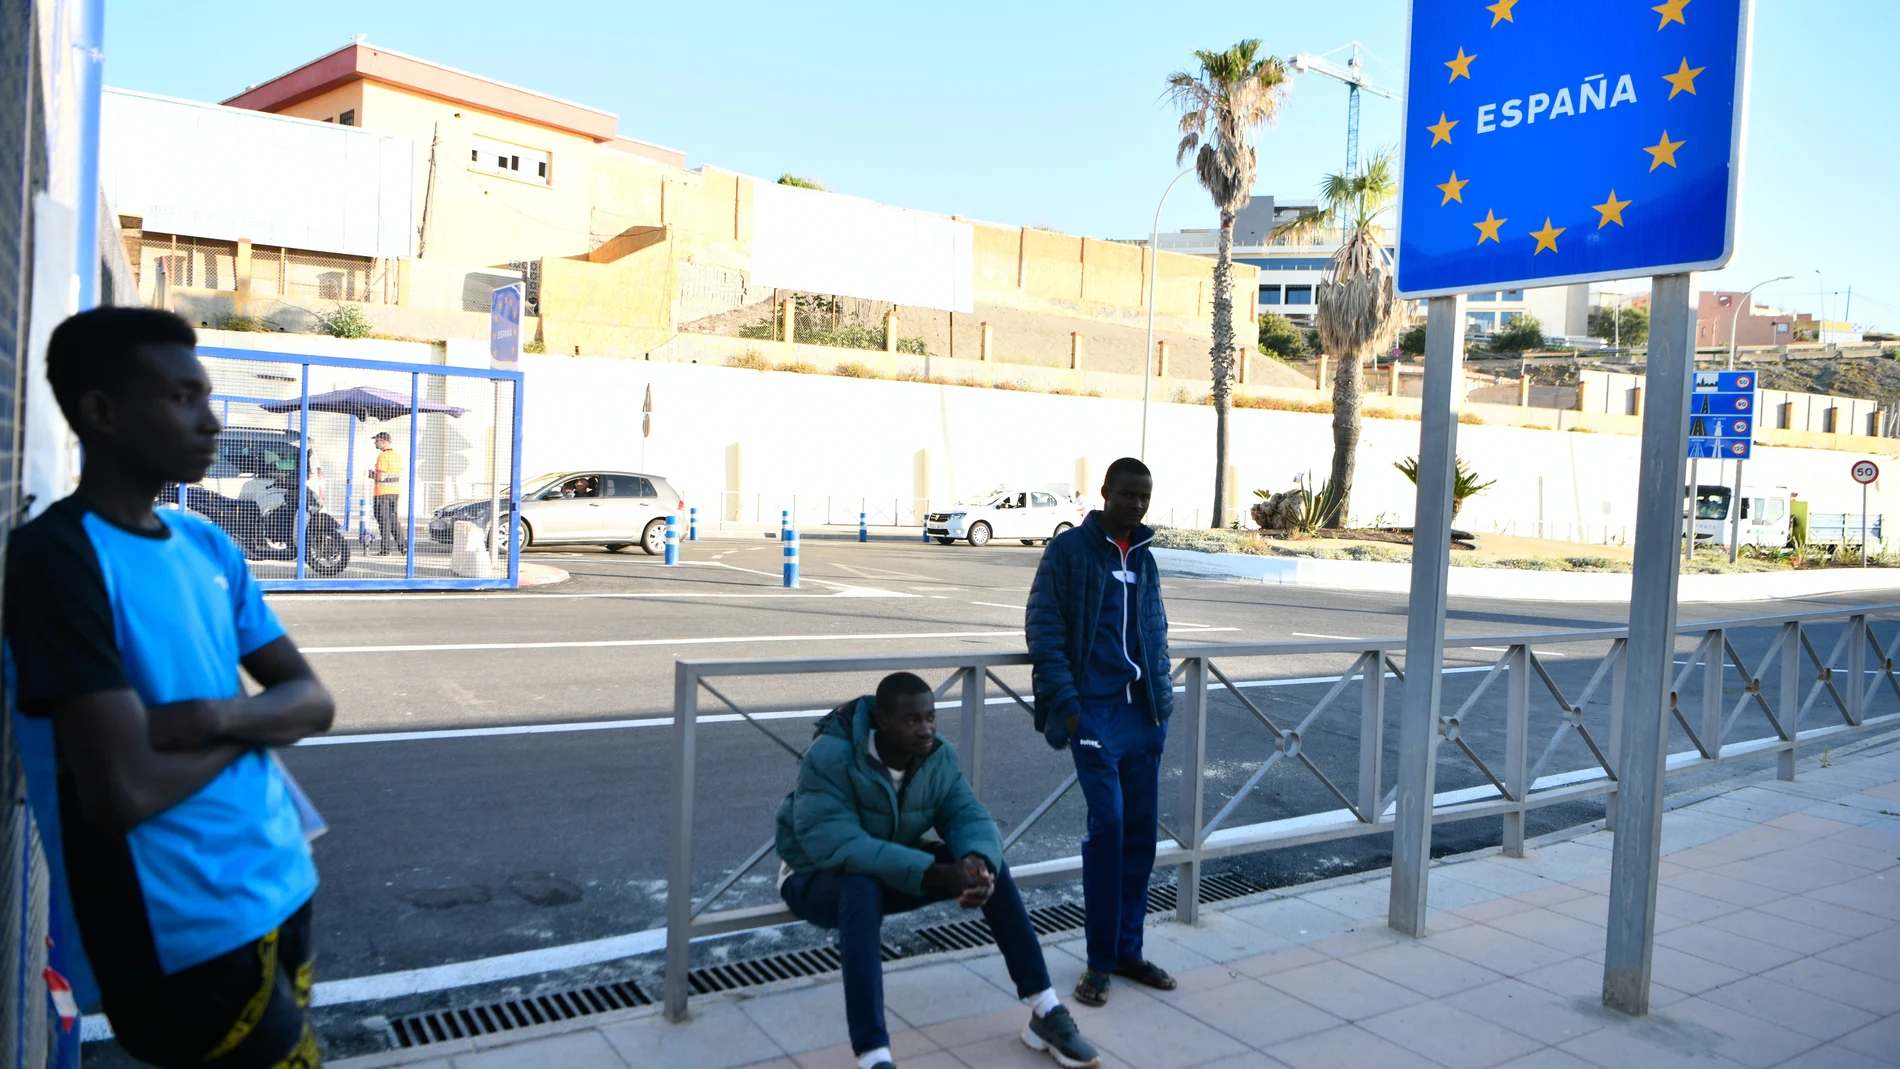 Tres personas cruzaron la frontera de Marruecos y España el día en que se abrieron las fronteras para trabajadores transfronterizos de Marruecos, en la frontera de Ceuta, a 31 de mayo de 2022, en Ceuta (España).